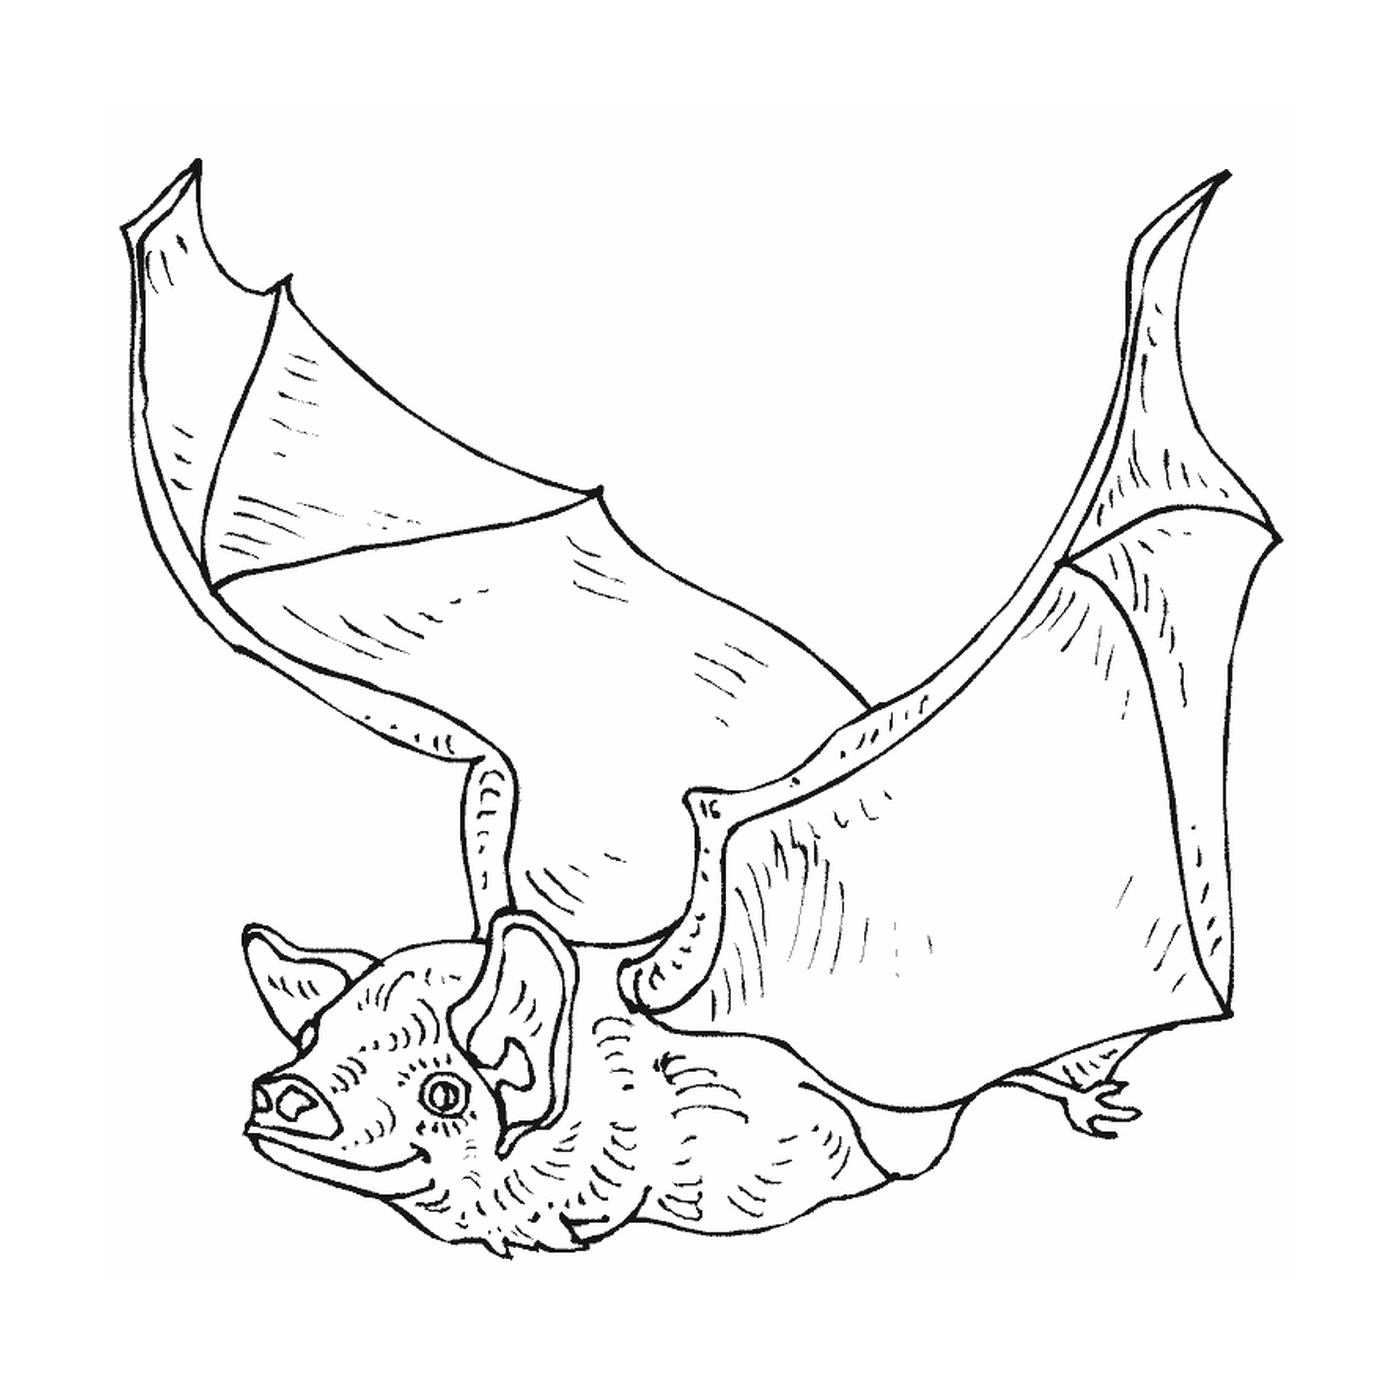  morcego em voo com asas implantadas 